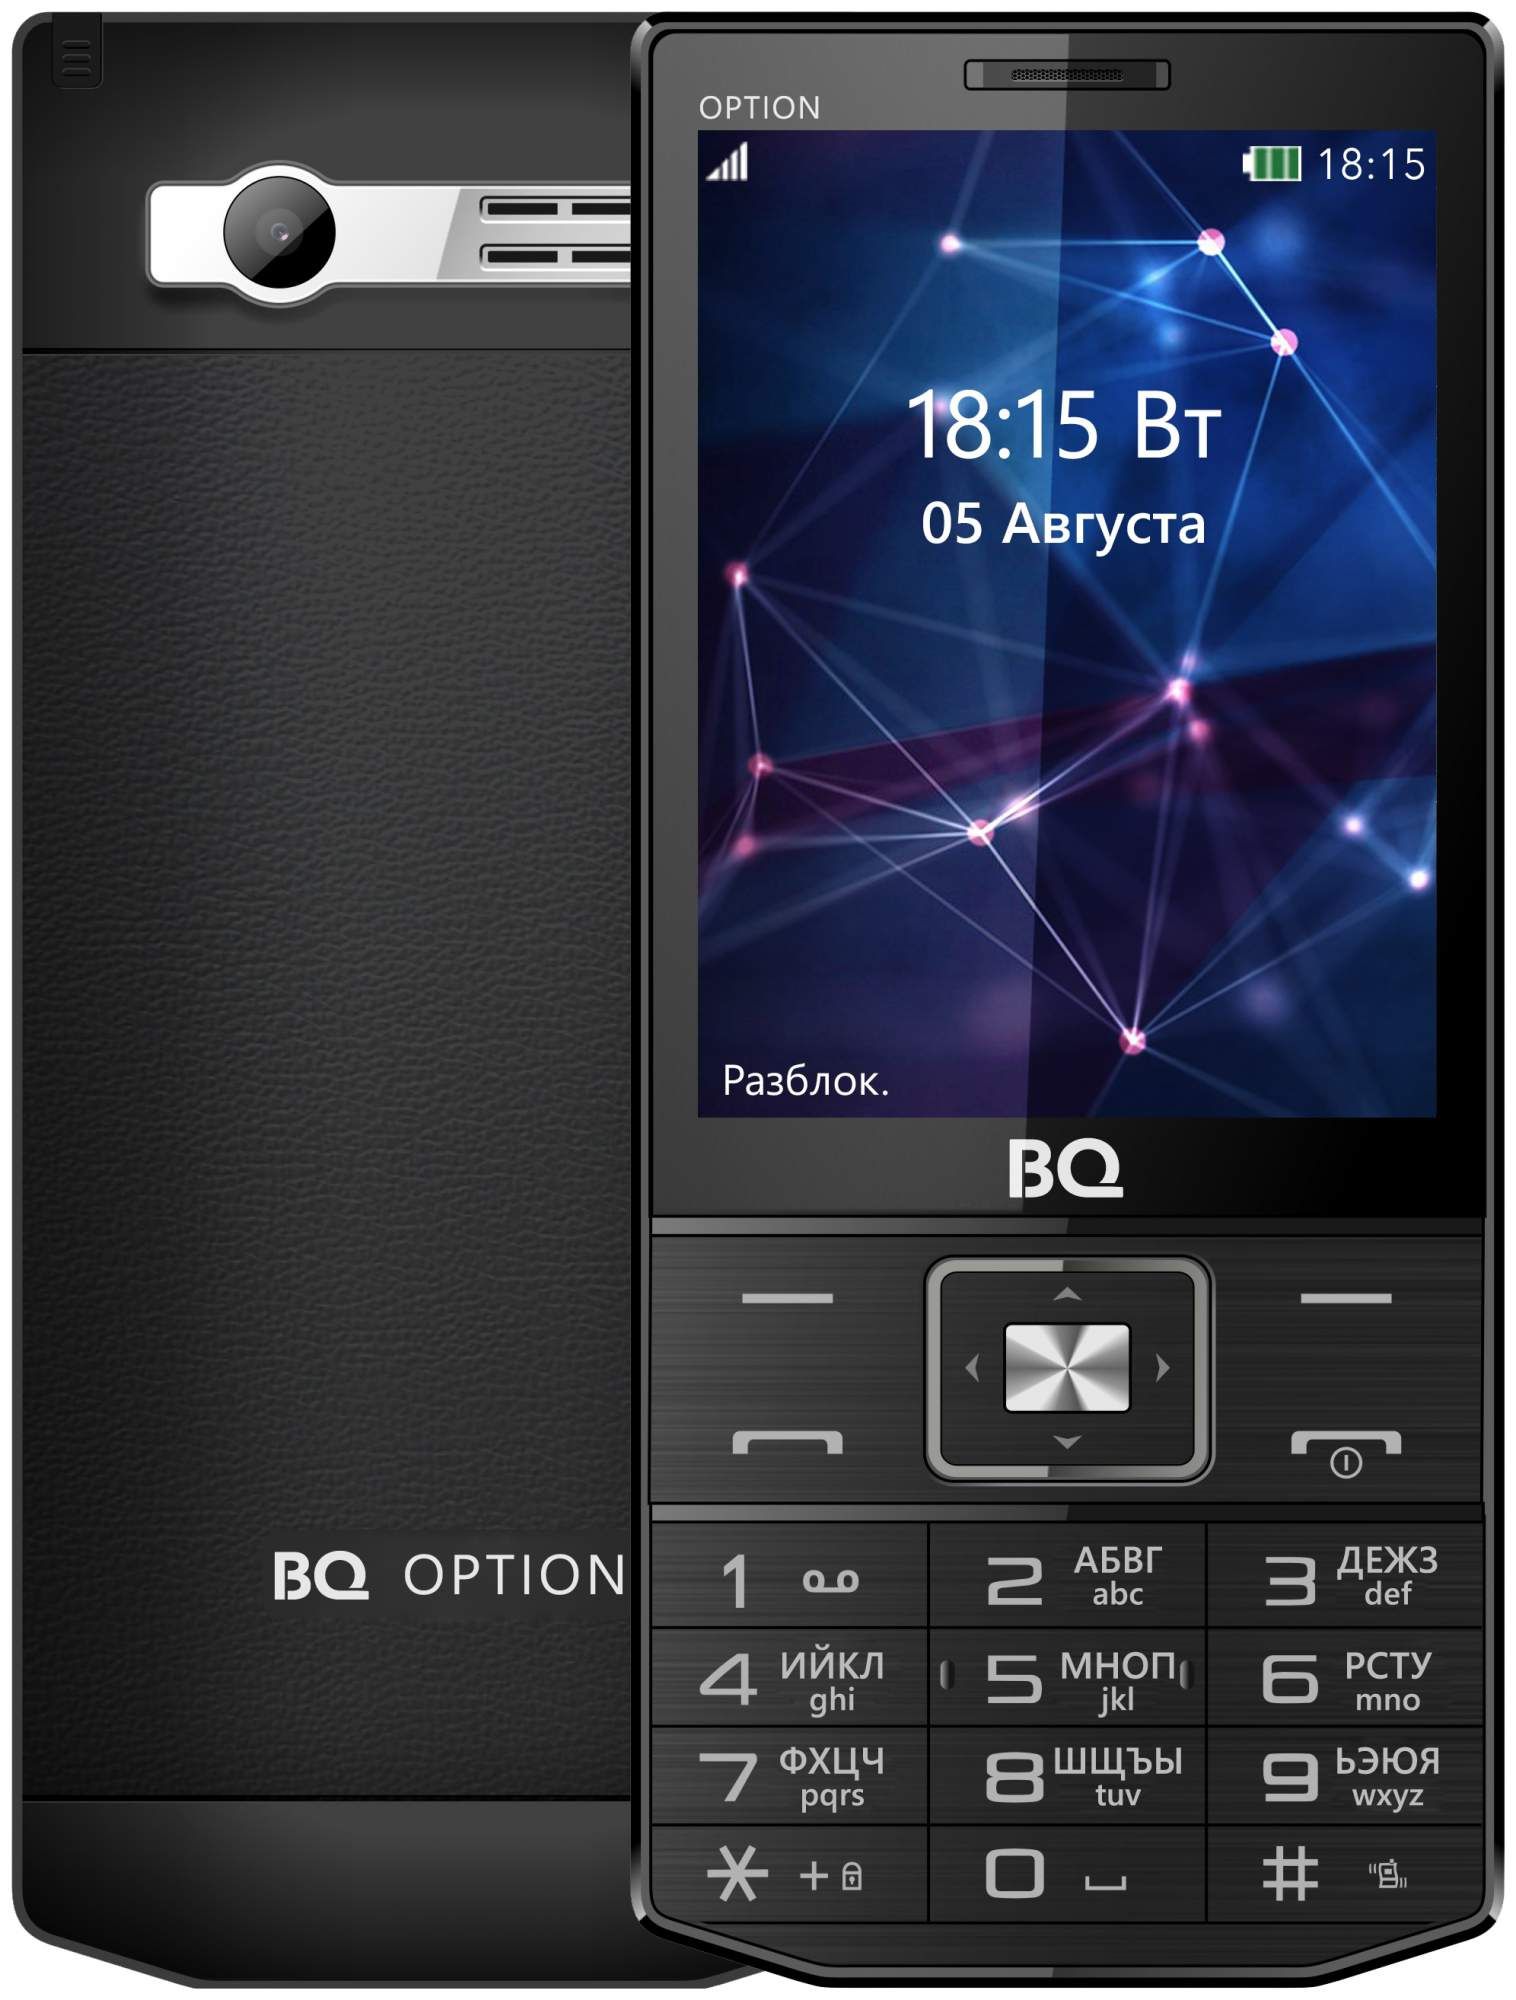 Кнопочный телефон без андроида. BQ-3201 option. BQ BQ-3201. BQ 3201. BQ Android кнопочный.